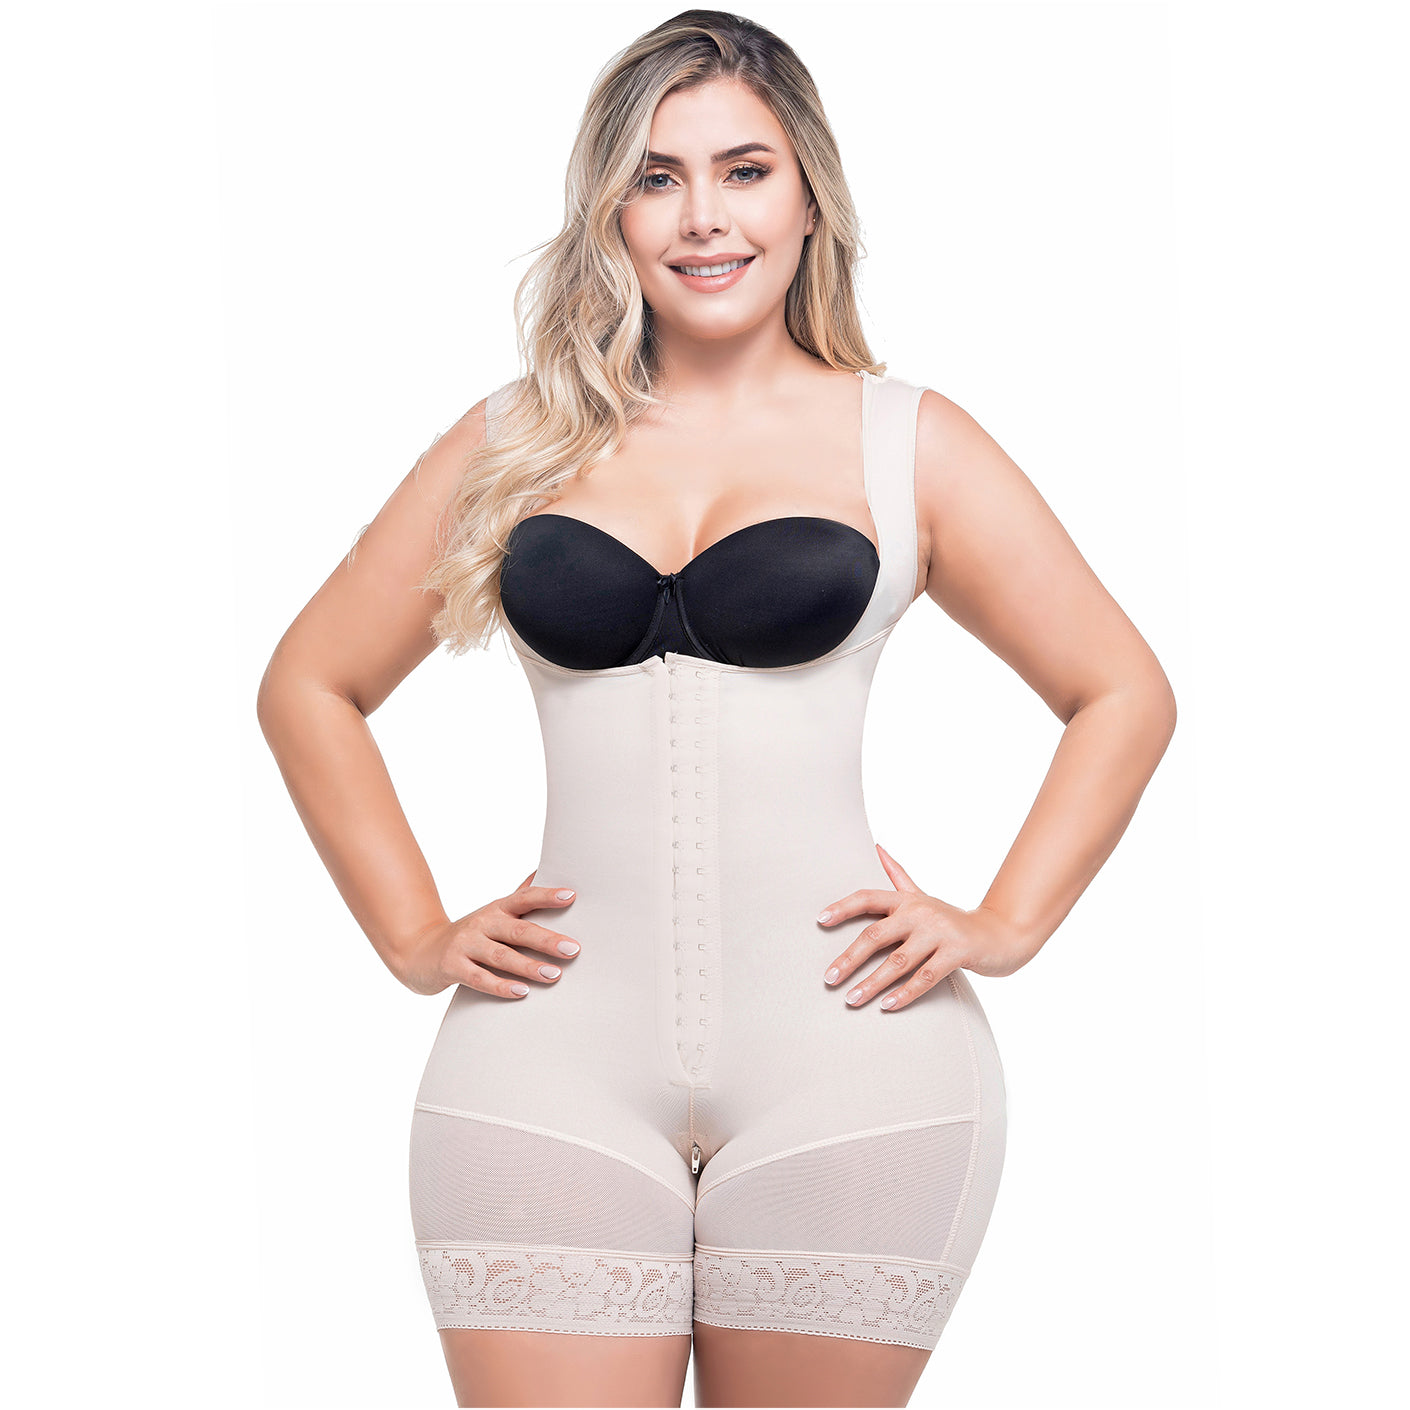 Buy Sonryse 010 Full Body Shaper for Women Fajas Colombianas